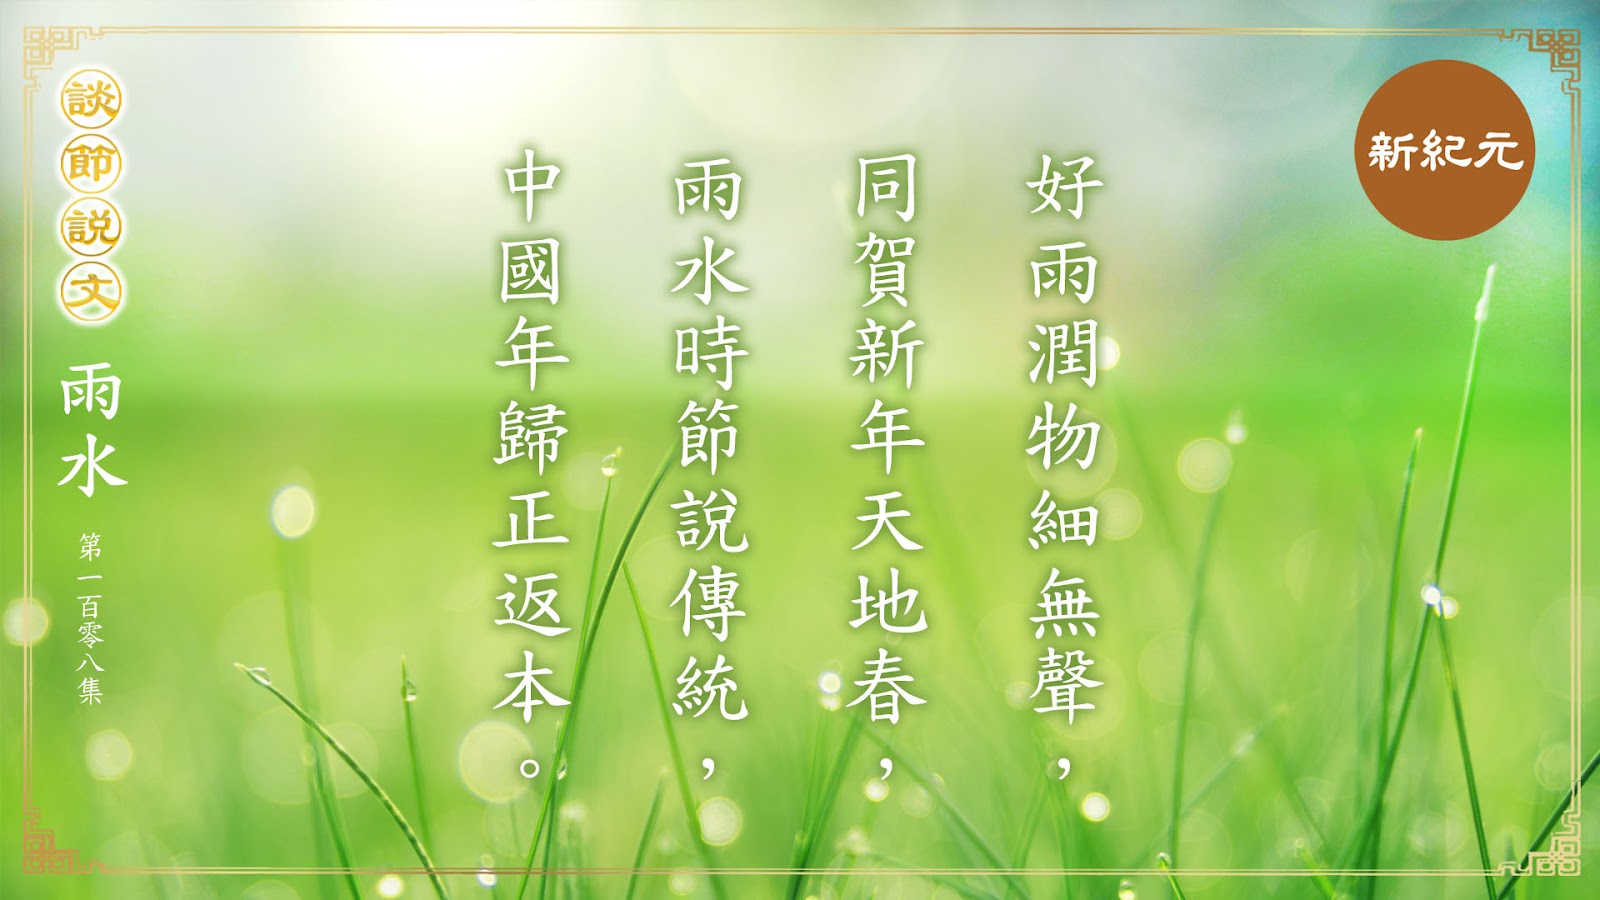 《談節說文》雨水時節說傳統 中國年歸正返本（第108集）|#新紀元